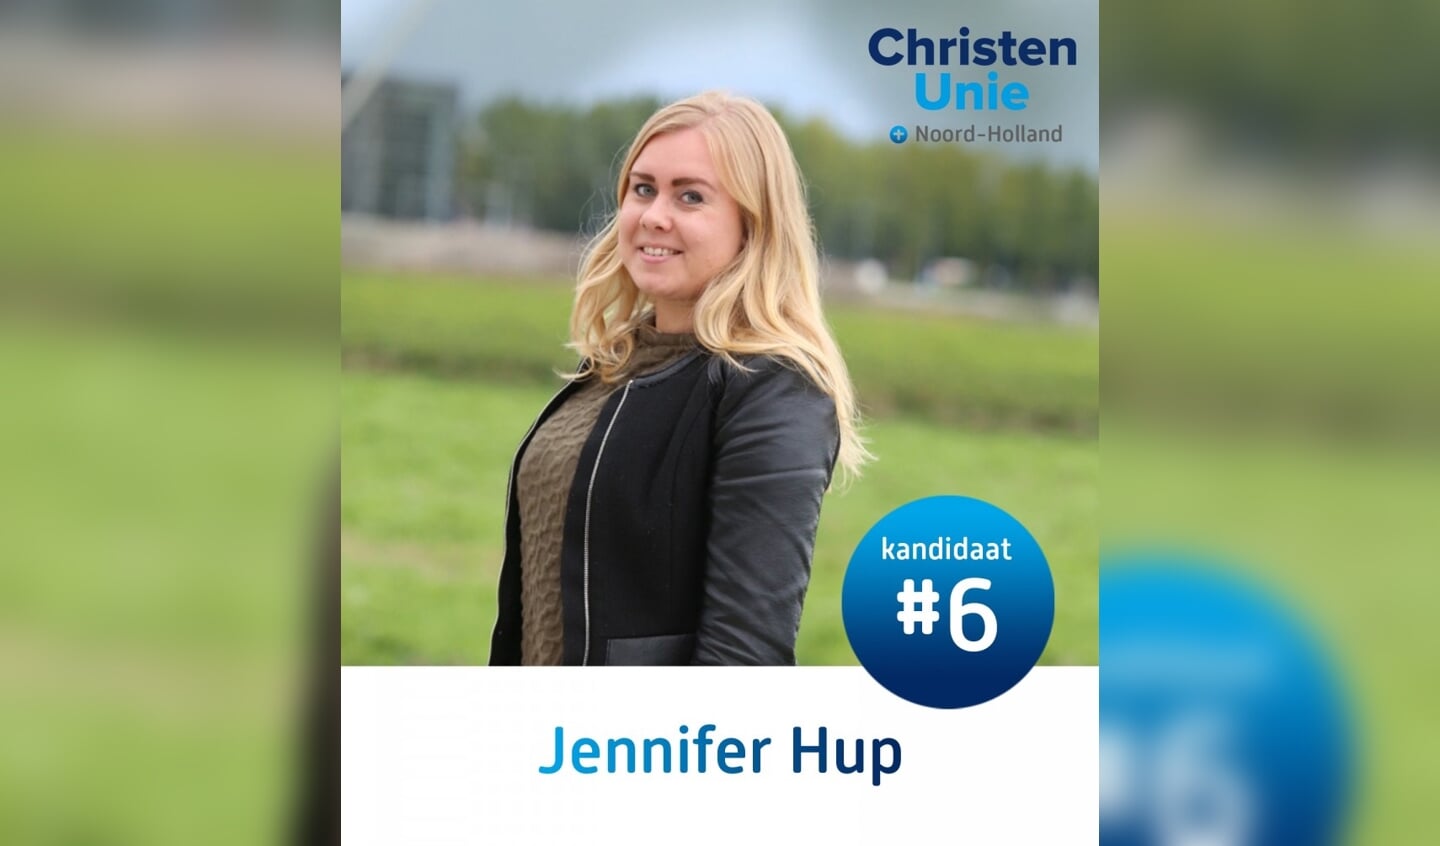 Jennifer Hup (ChristenUnie): De reden dat ik mee doe aan deze verkiezingen is omdat ik graag maatschappelijk betrokken wil zijn.